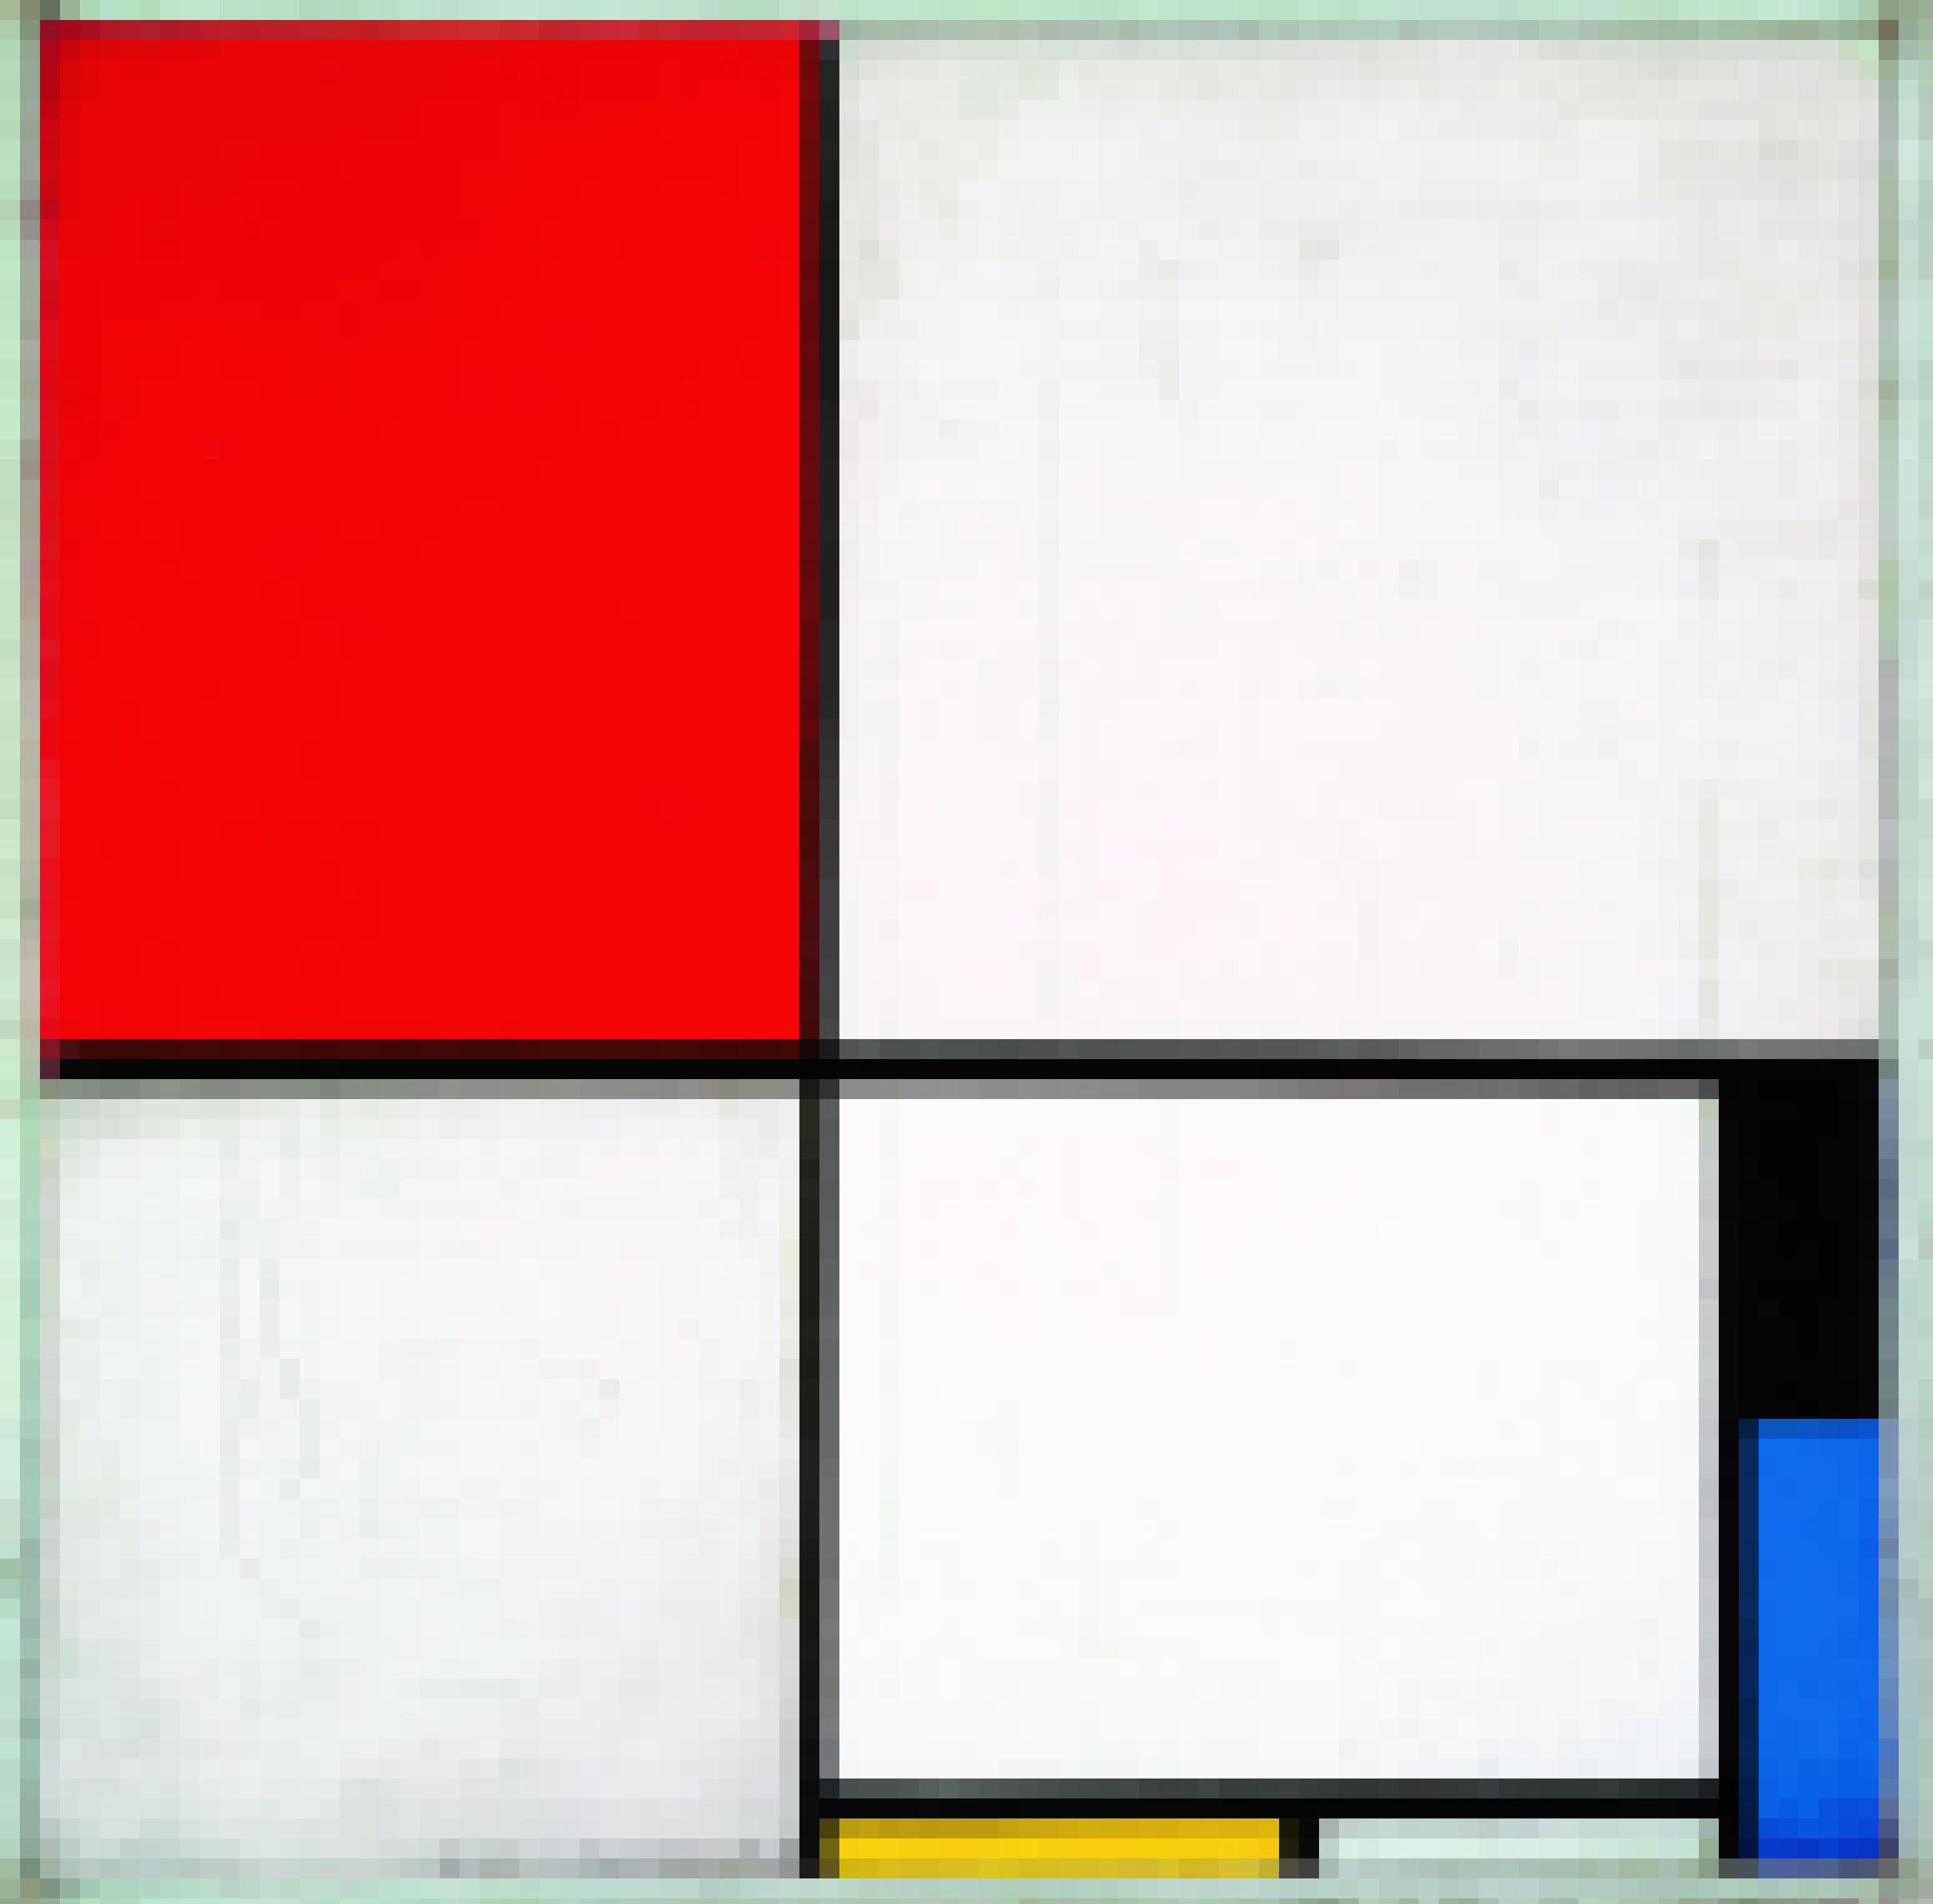 Ein Gemälde, das schwaze senkrechte und waagerechte Balken zeigt sowie drei Farbfelder in Gelb Rot und Blau.